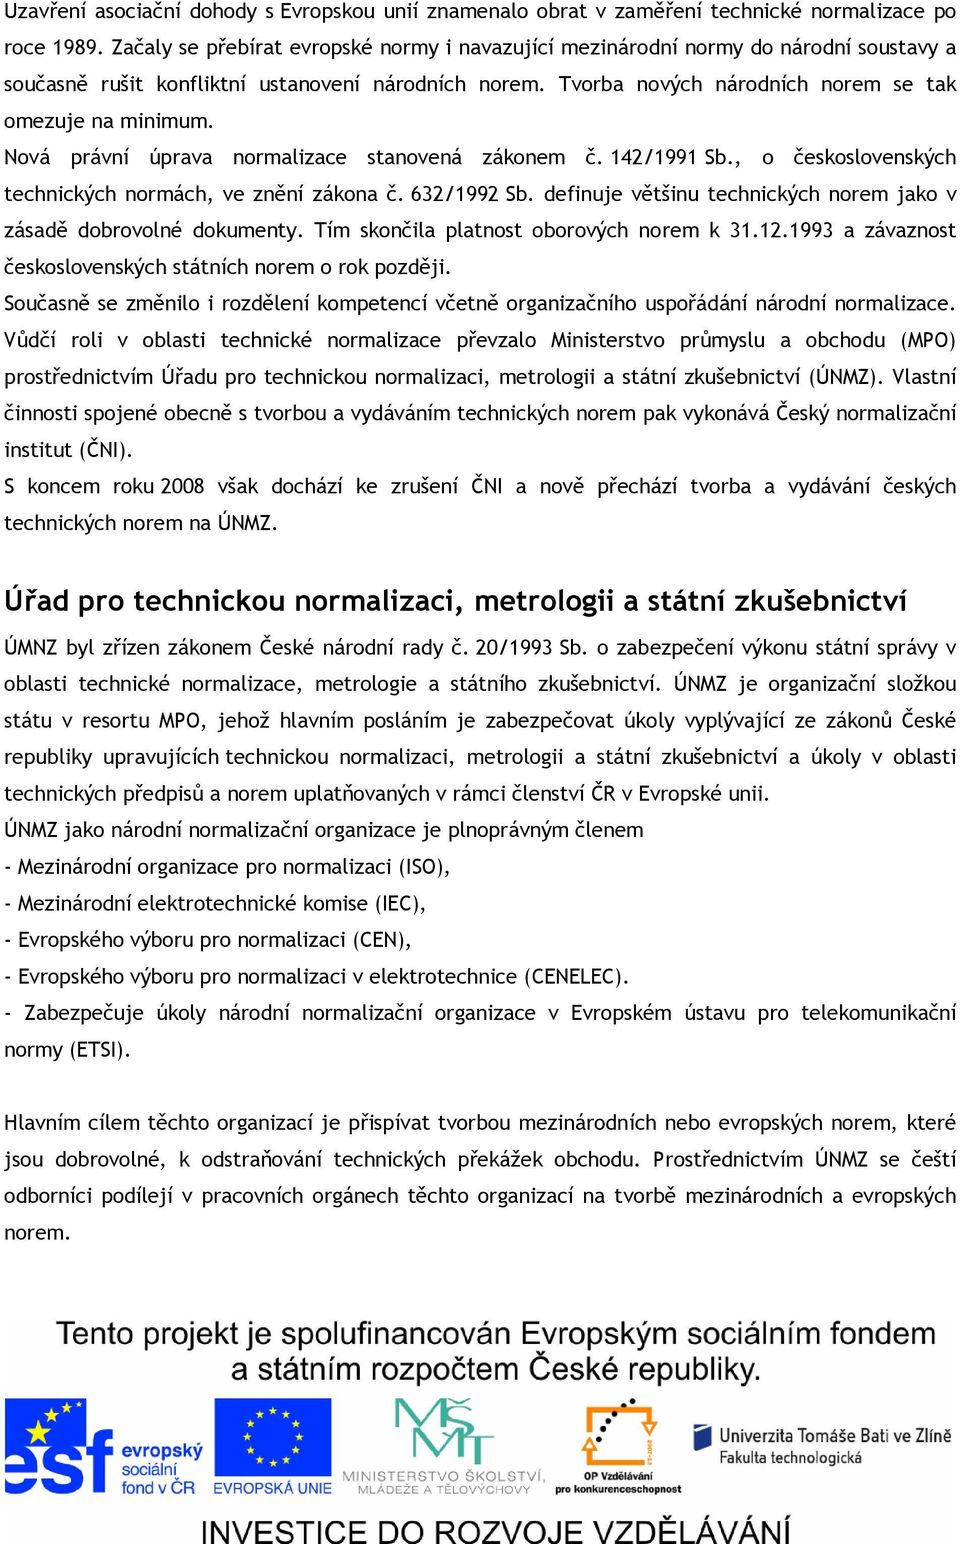 Nová právní úprava normalizace stanovená zákonem č. 142/1991 Sb., o československých technických normách, ve znění zákona č. 632/1992 Sb.